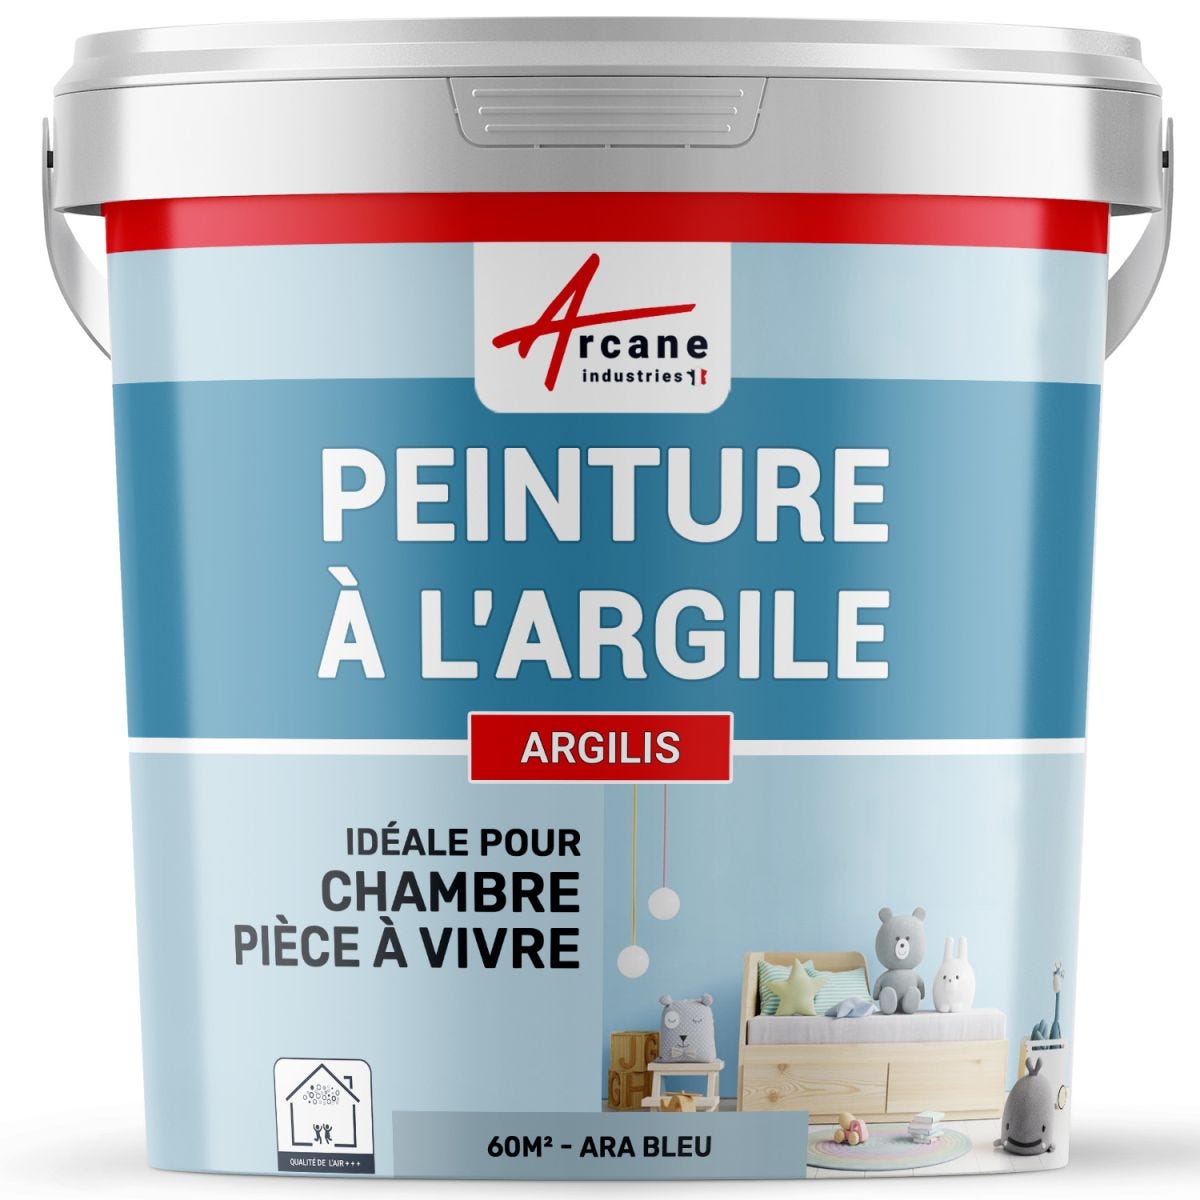 PEINTURE ARGILE naturelle et saine - ARGILIS Ara Bleu - 60 m² (2x5 kg en 1 couche)ARCANE INDUSTRIES 0